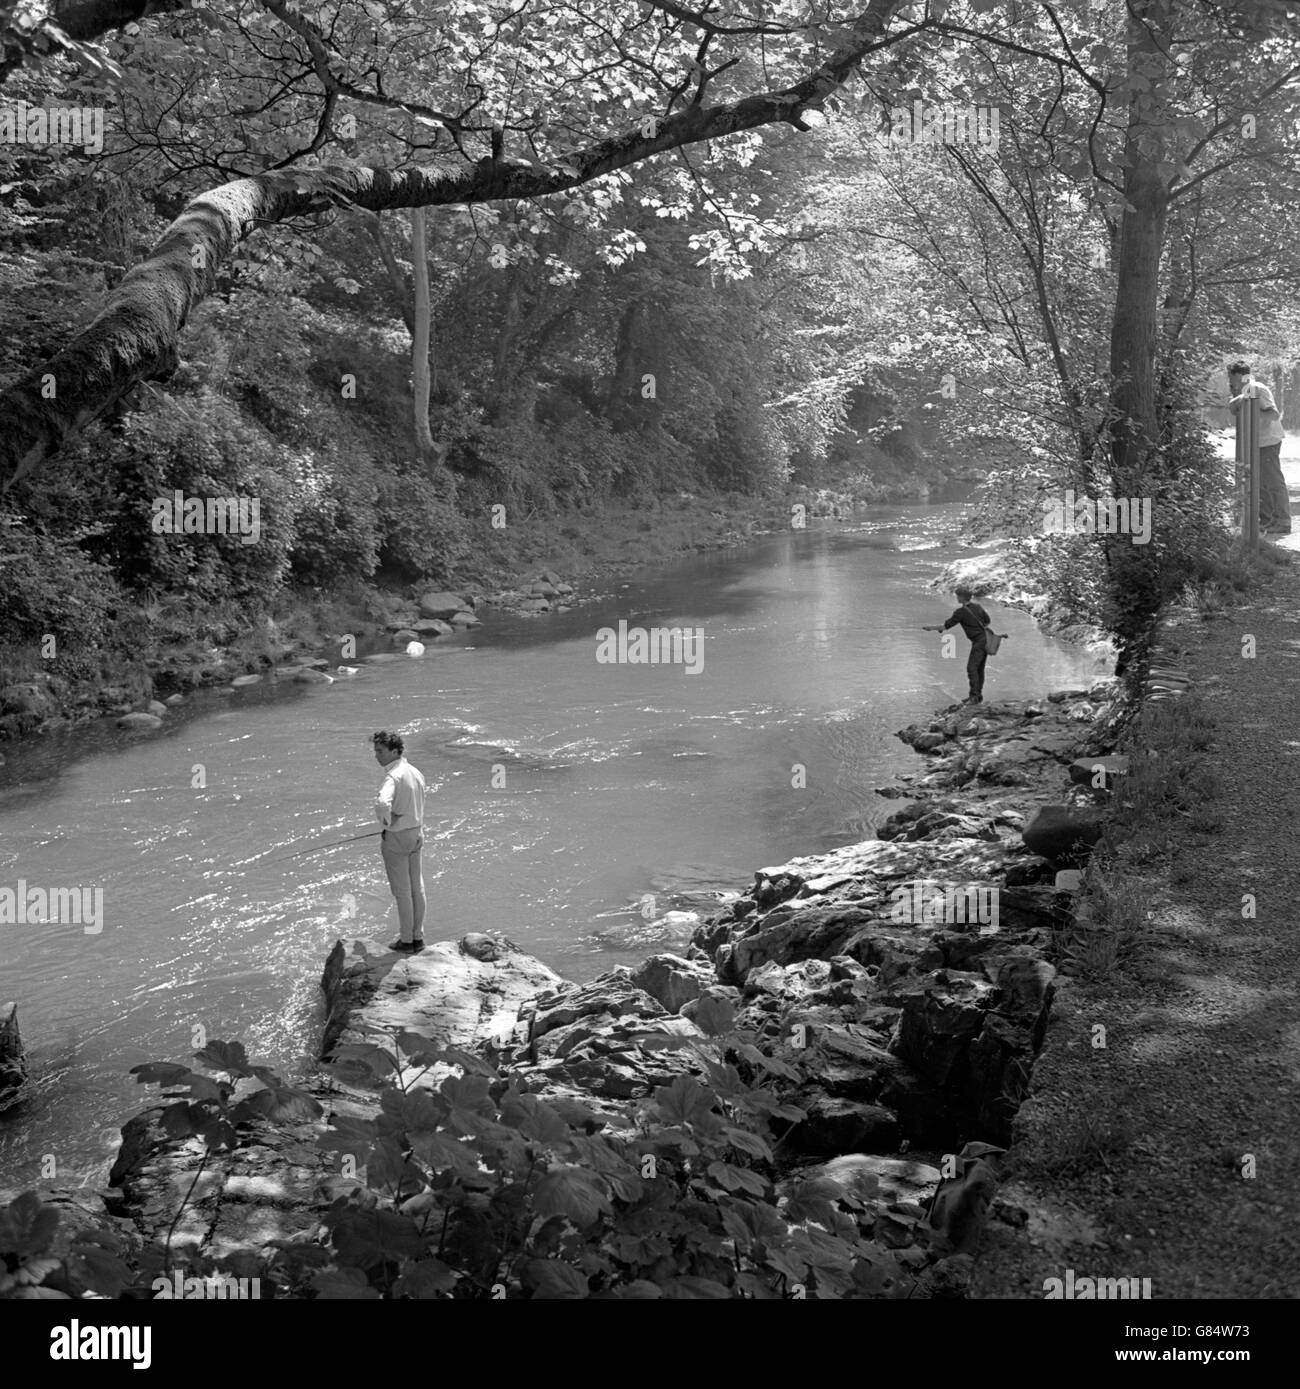 Der Fluss Tavy, der von Dartmoor zu seinem Zusammenfluss mit dem Tamar gleitet, und Angler genießen den ländlichen Rückzugsort. Es liegt am Stadtrand von Tavistock, einer der alten Stannerstädte von Devon. Stockfoto